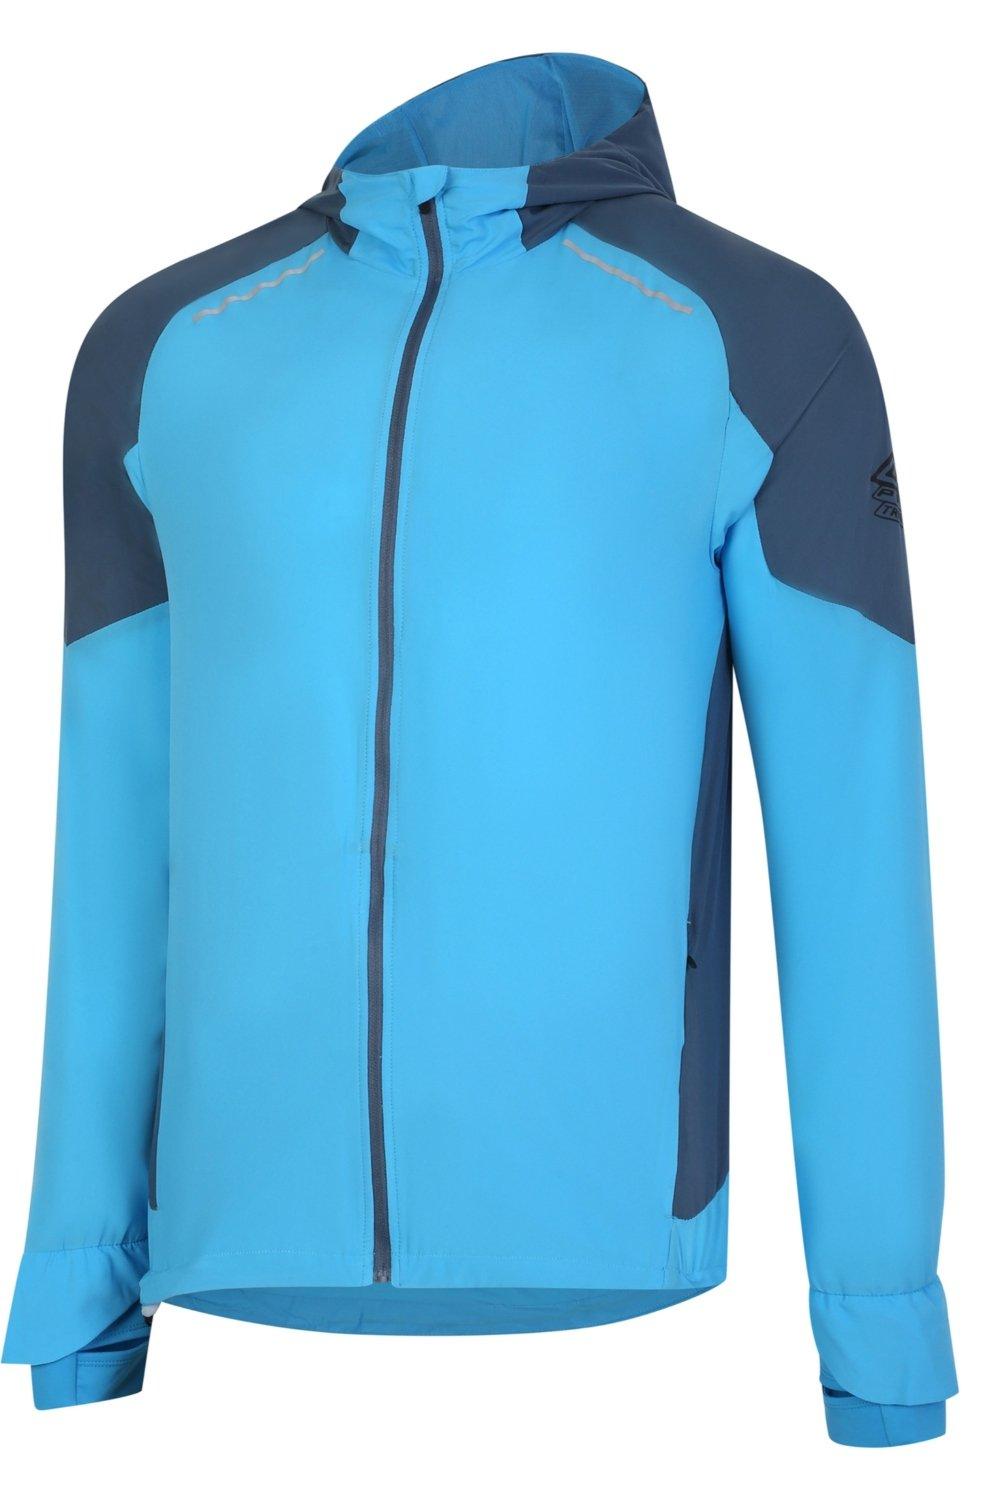 Легкая куртка Pro Training Elite Umbro, синий футболка umbro футболка тренировочная umbro pro training graphic 65845u kmu размер s серый черный